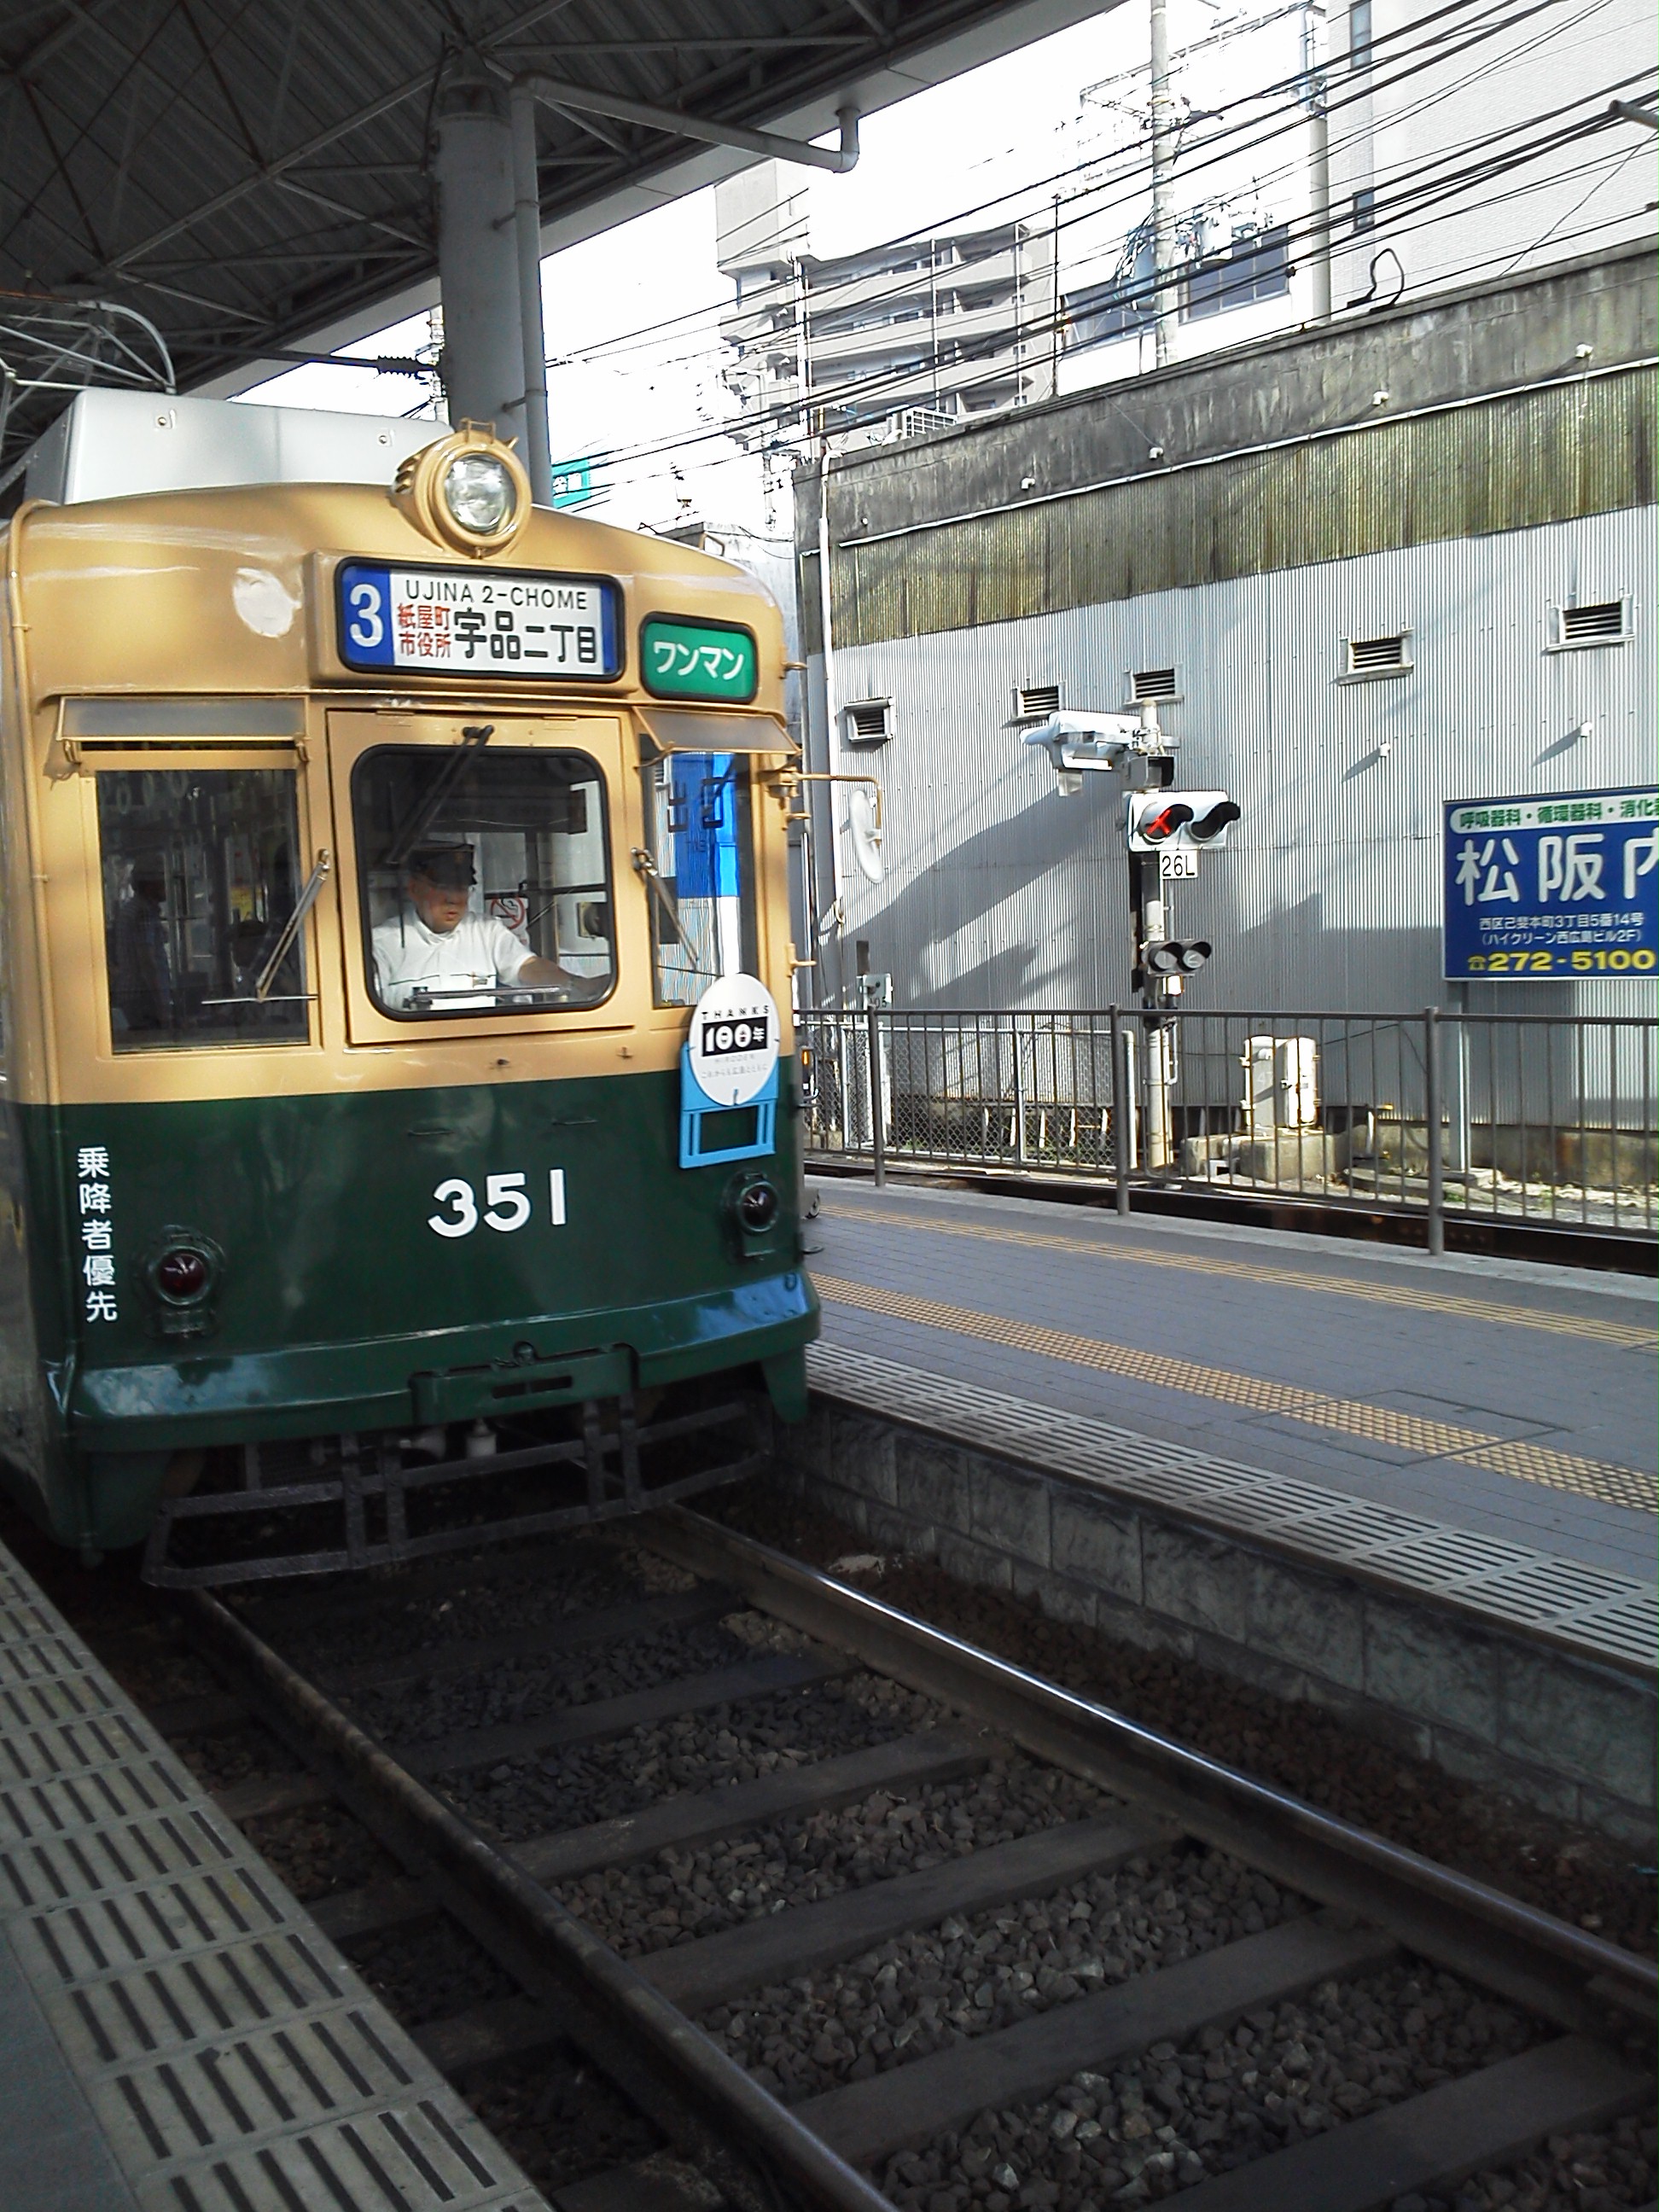 広島市電の車両旧